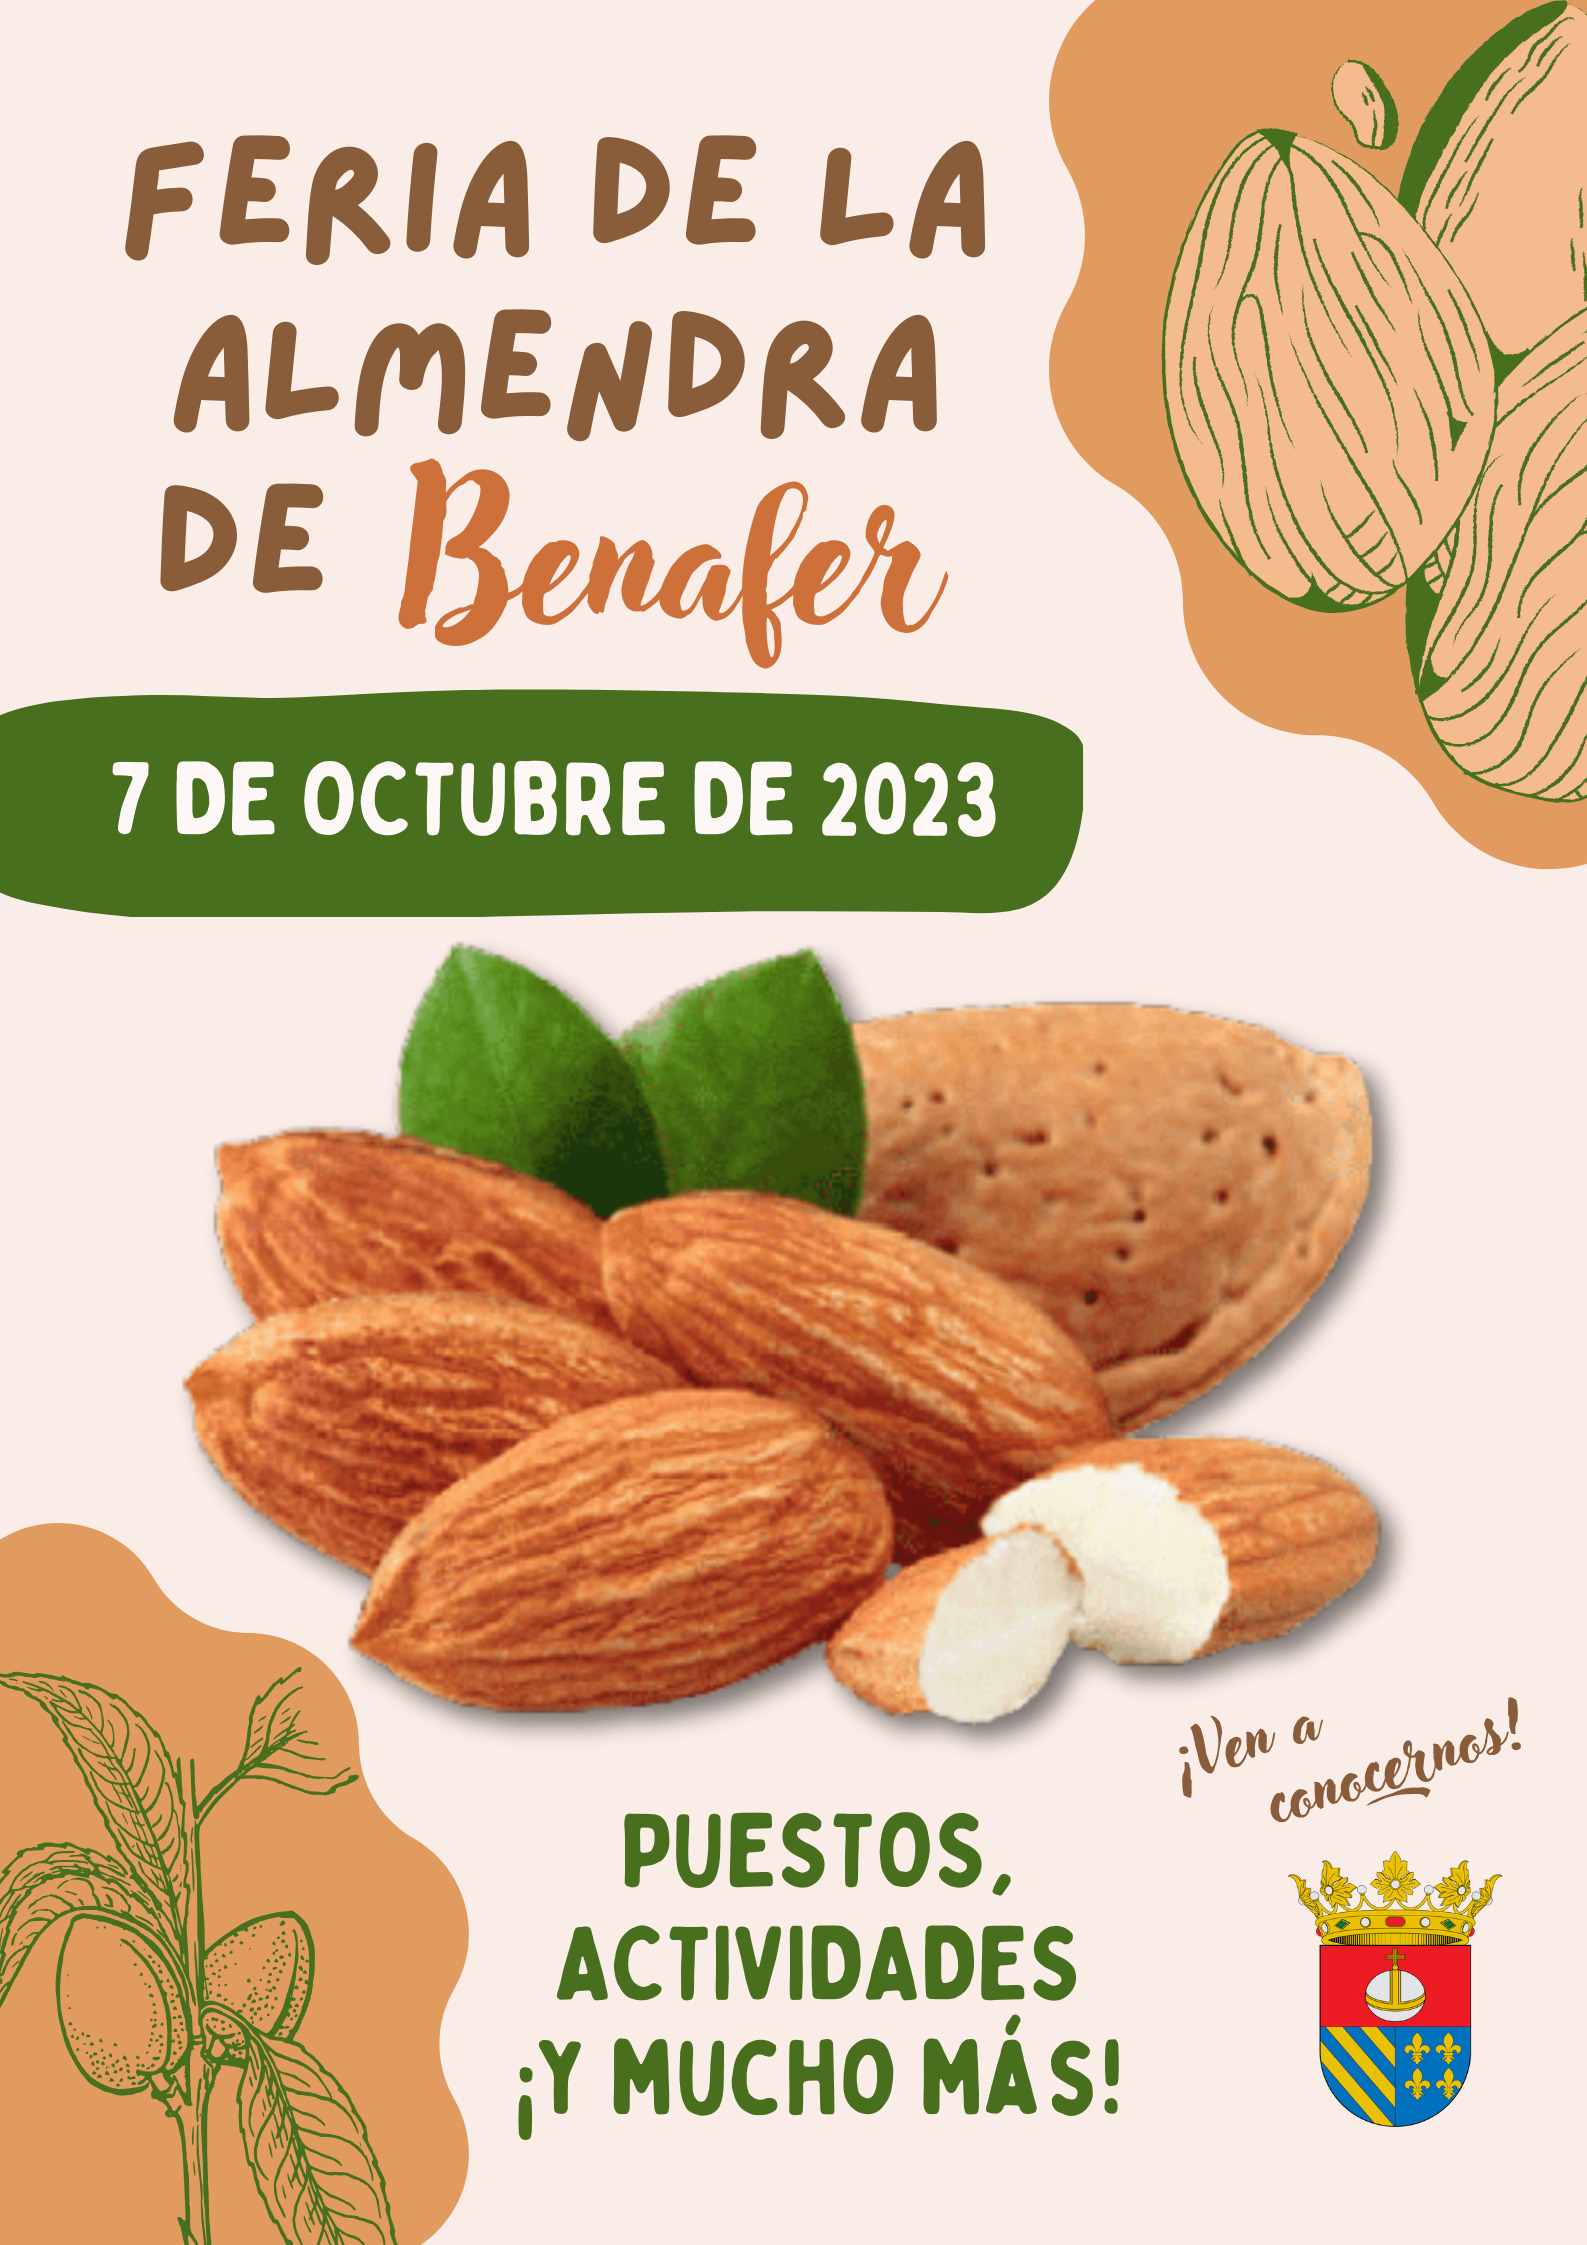 FERIA DE LA ALMENDRA BENAFER 2023